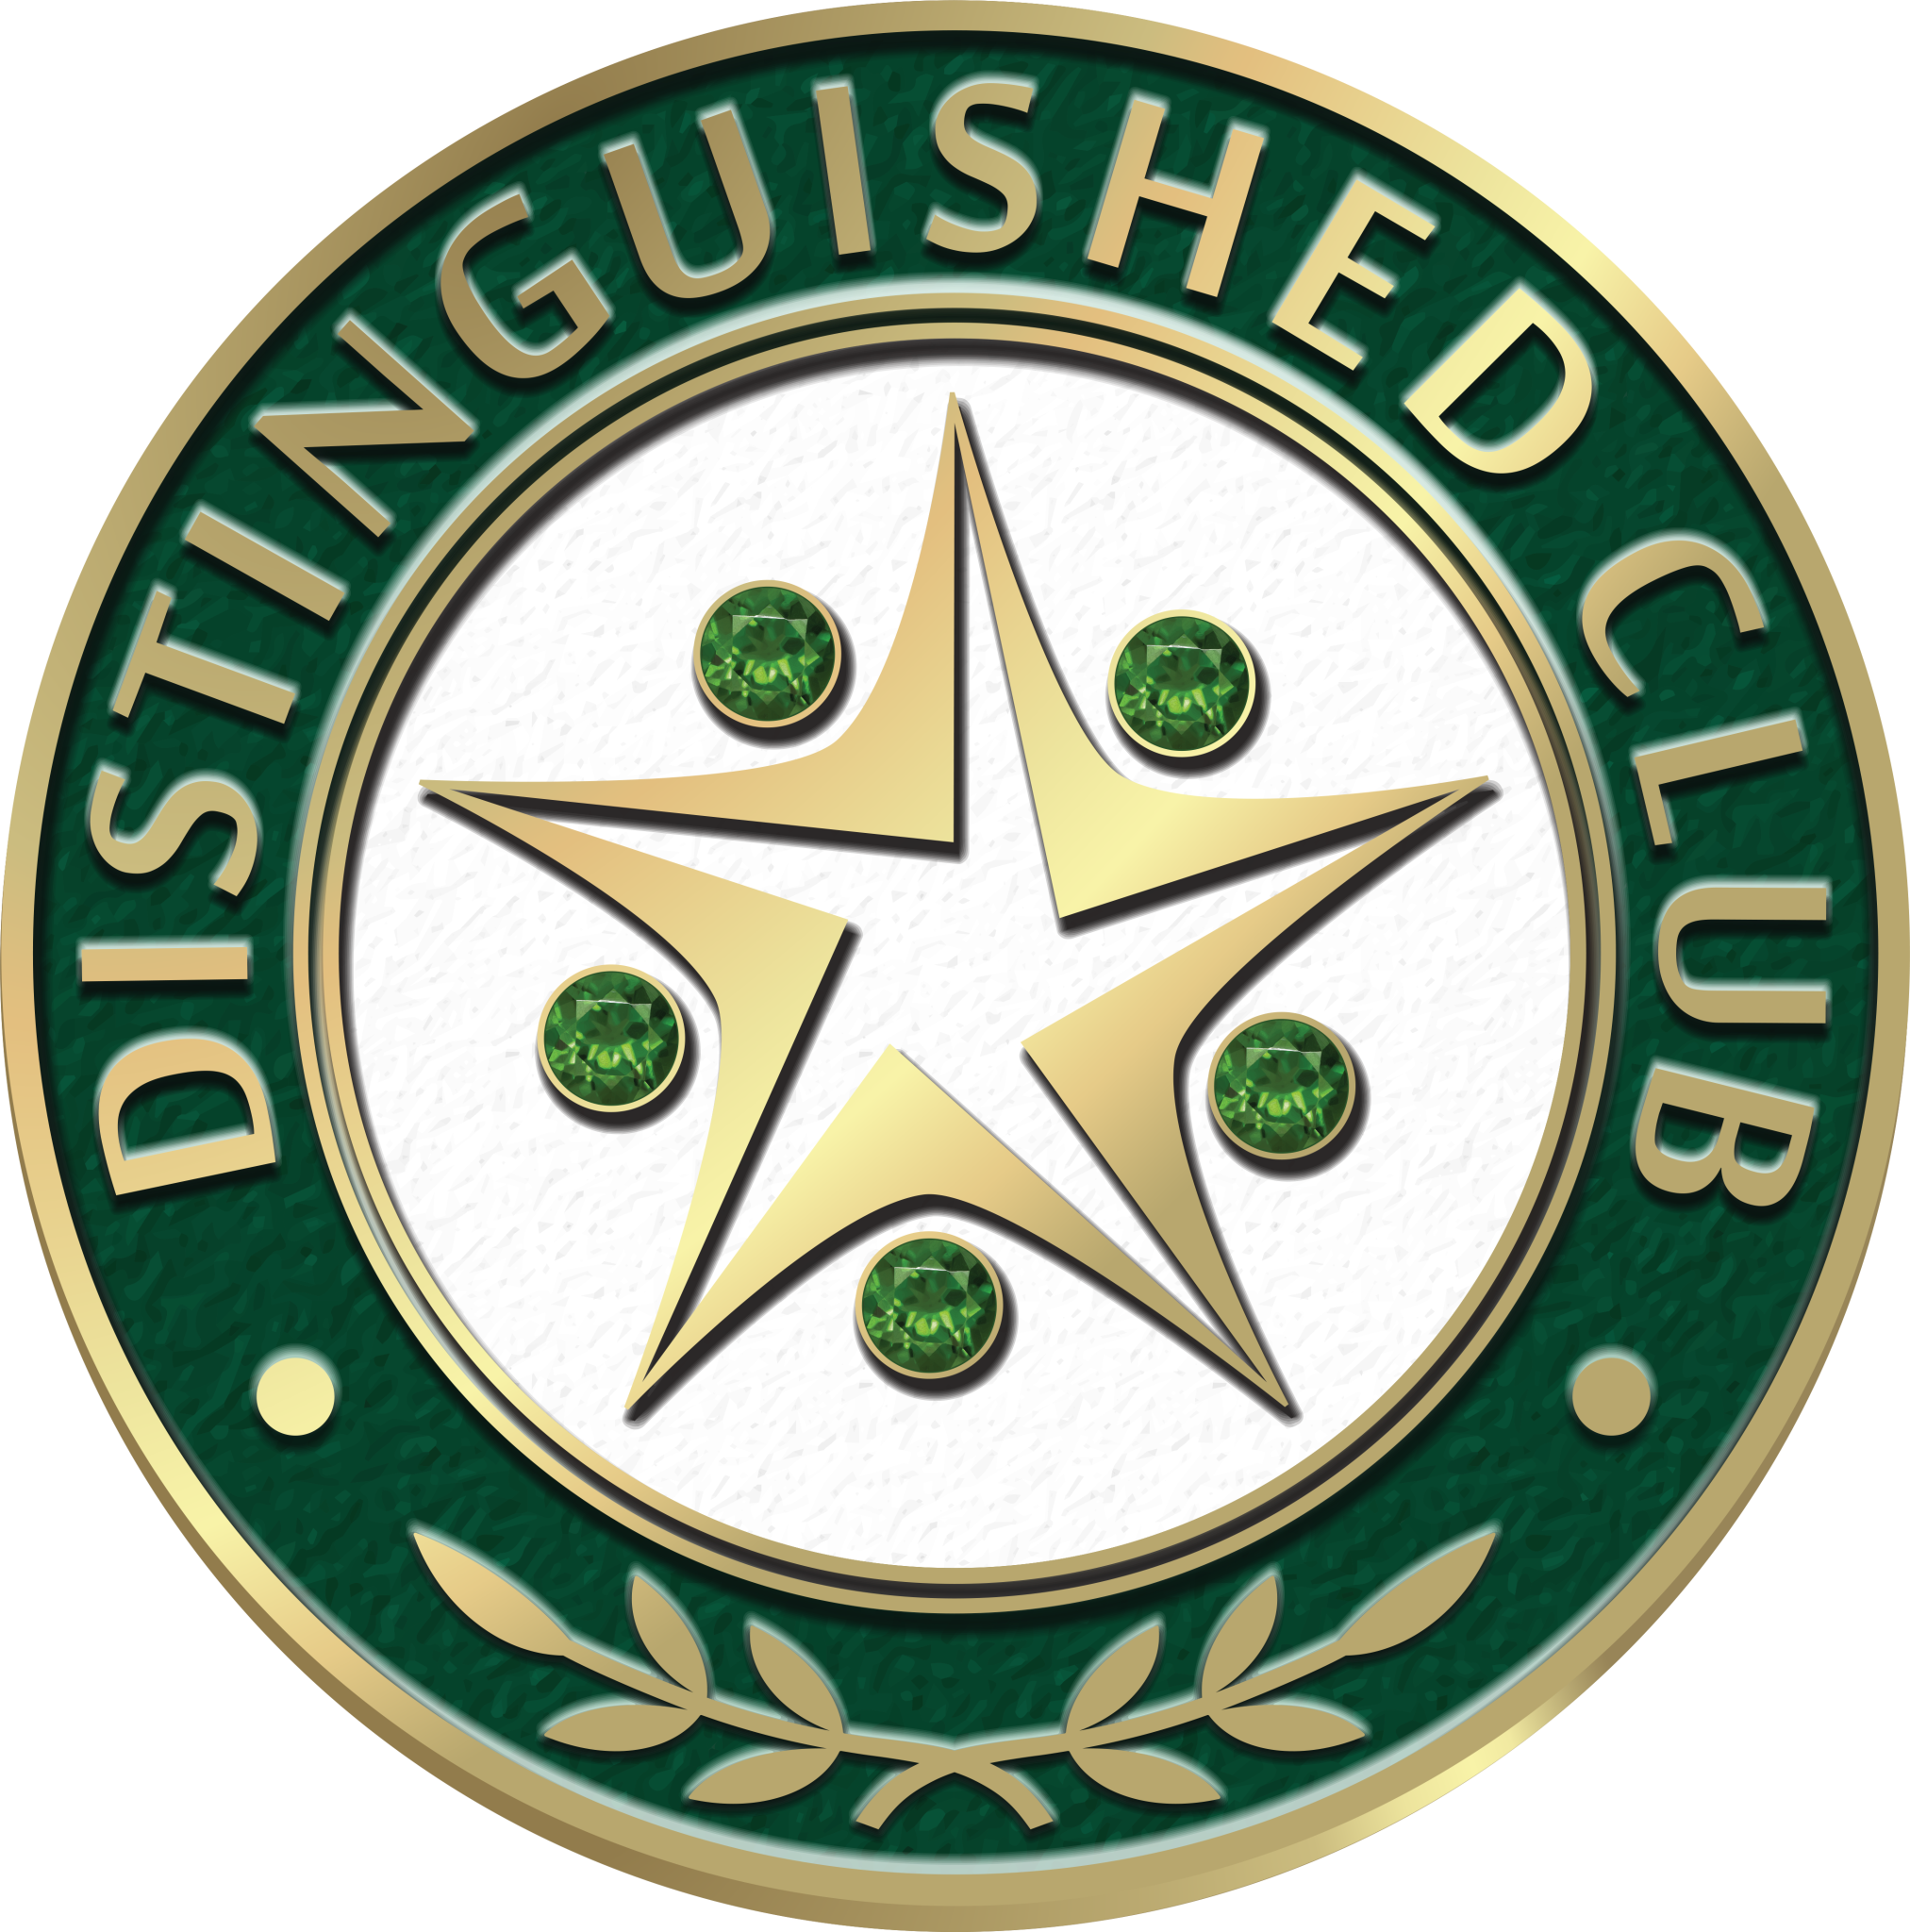 Distinguished Club award logo